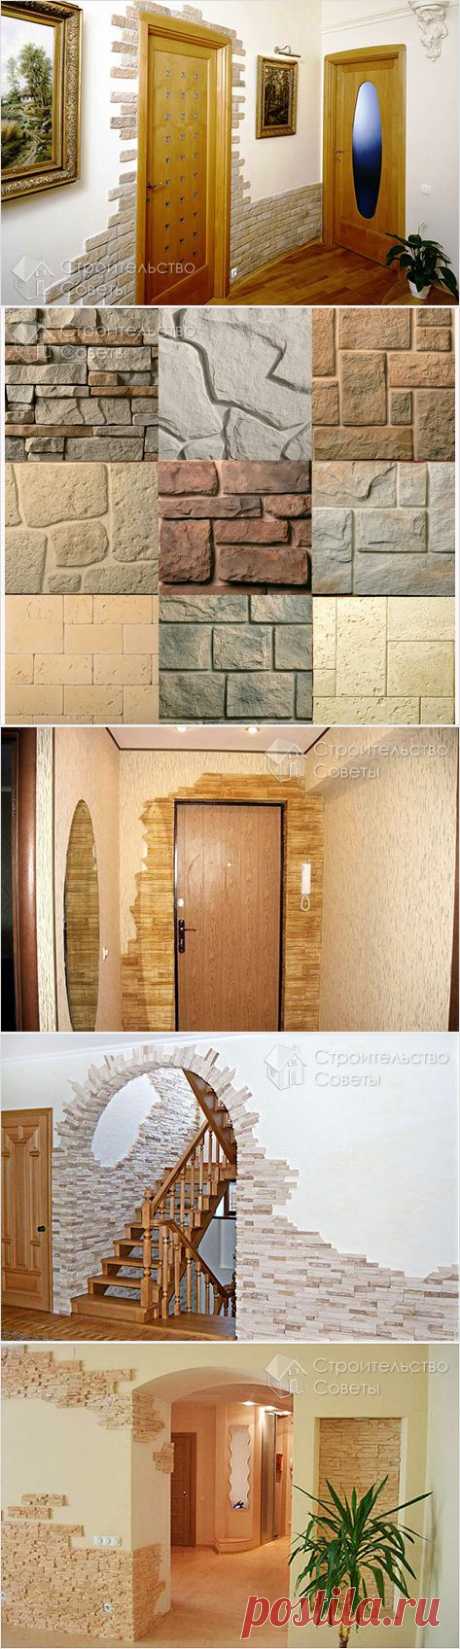 Отделка дверных проемов декоративным камнем - как отделать дверные проемы декоративным камнем